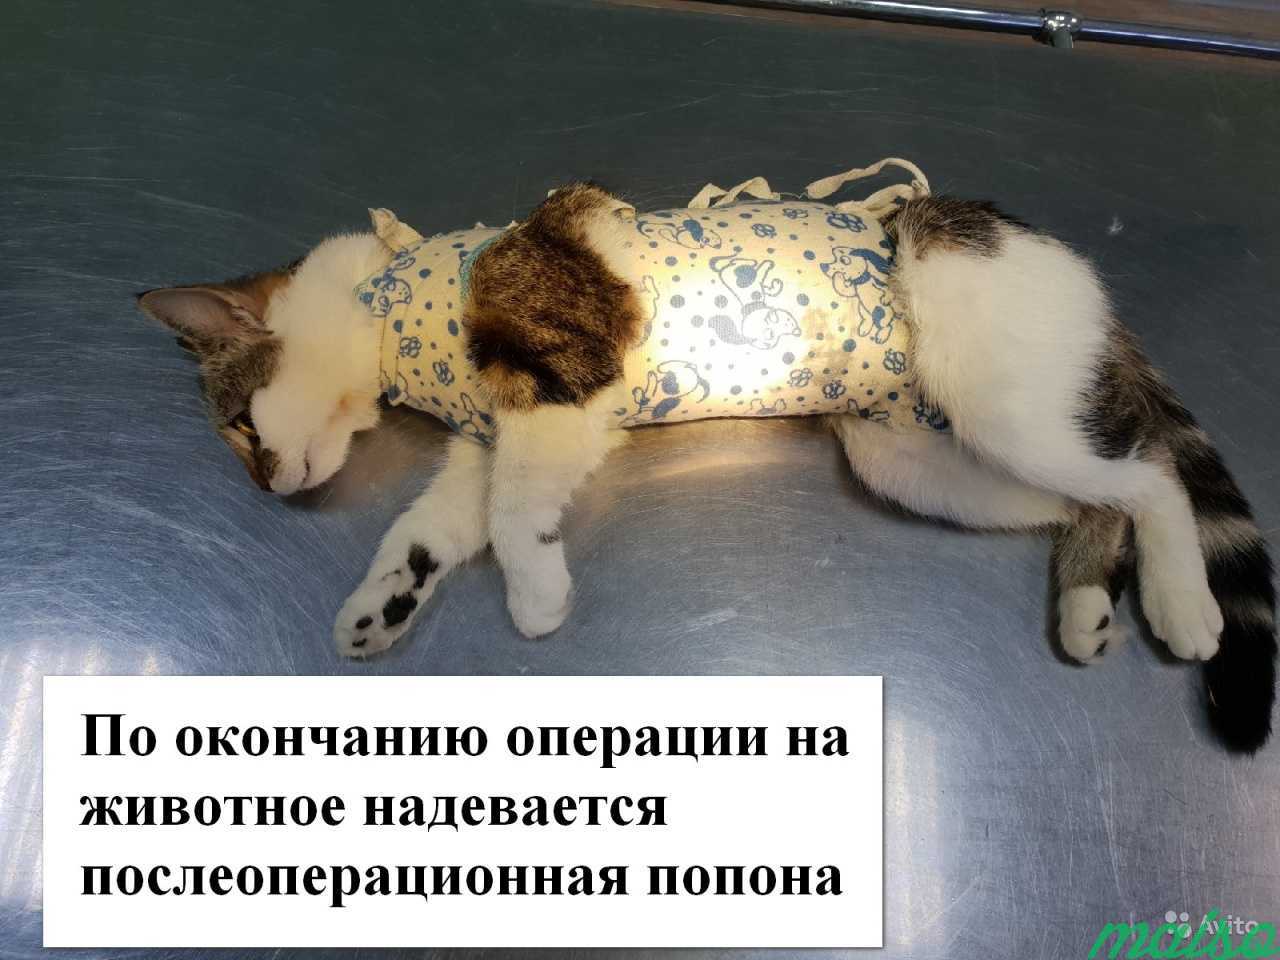 Ветеринарный врач. Стерилизация кошки на дому в Санкт-Петербурге. Фото 4